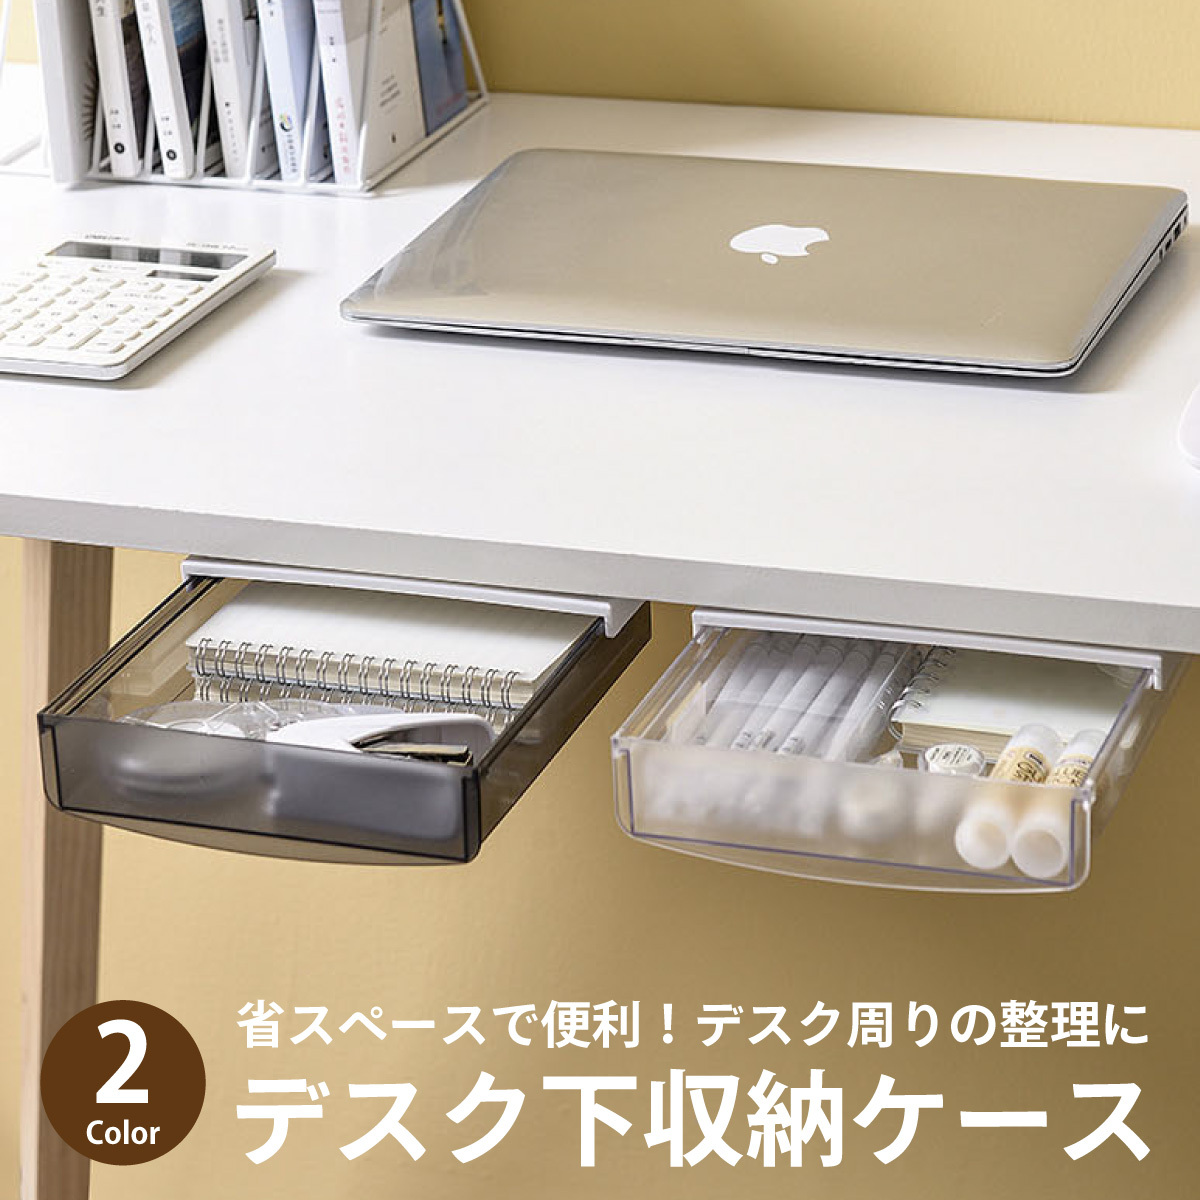 【得価限定品】収納ボックス テーブル下 仕分けボックス デスク下 貼り付け収納ボックス 白 オフィス用品